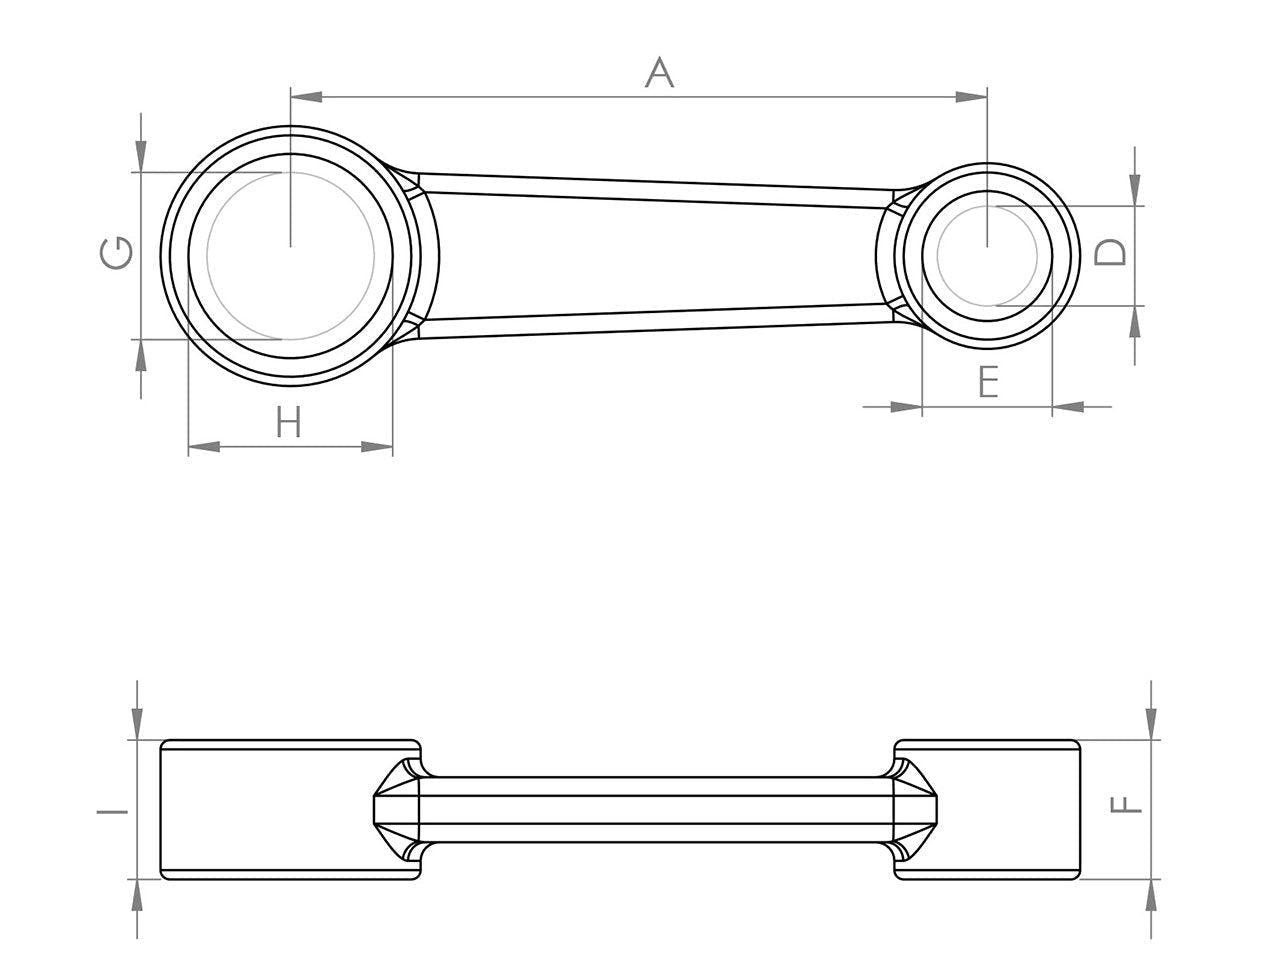 Zeichnung Barikit Pleuel für einen Yamaha Majesty 125 Motor mit Bemaßung.